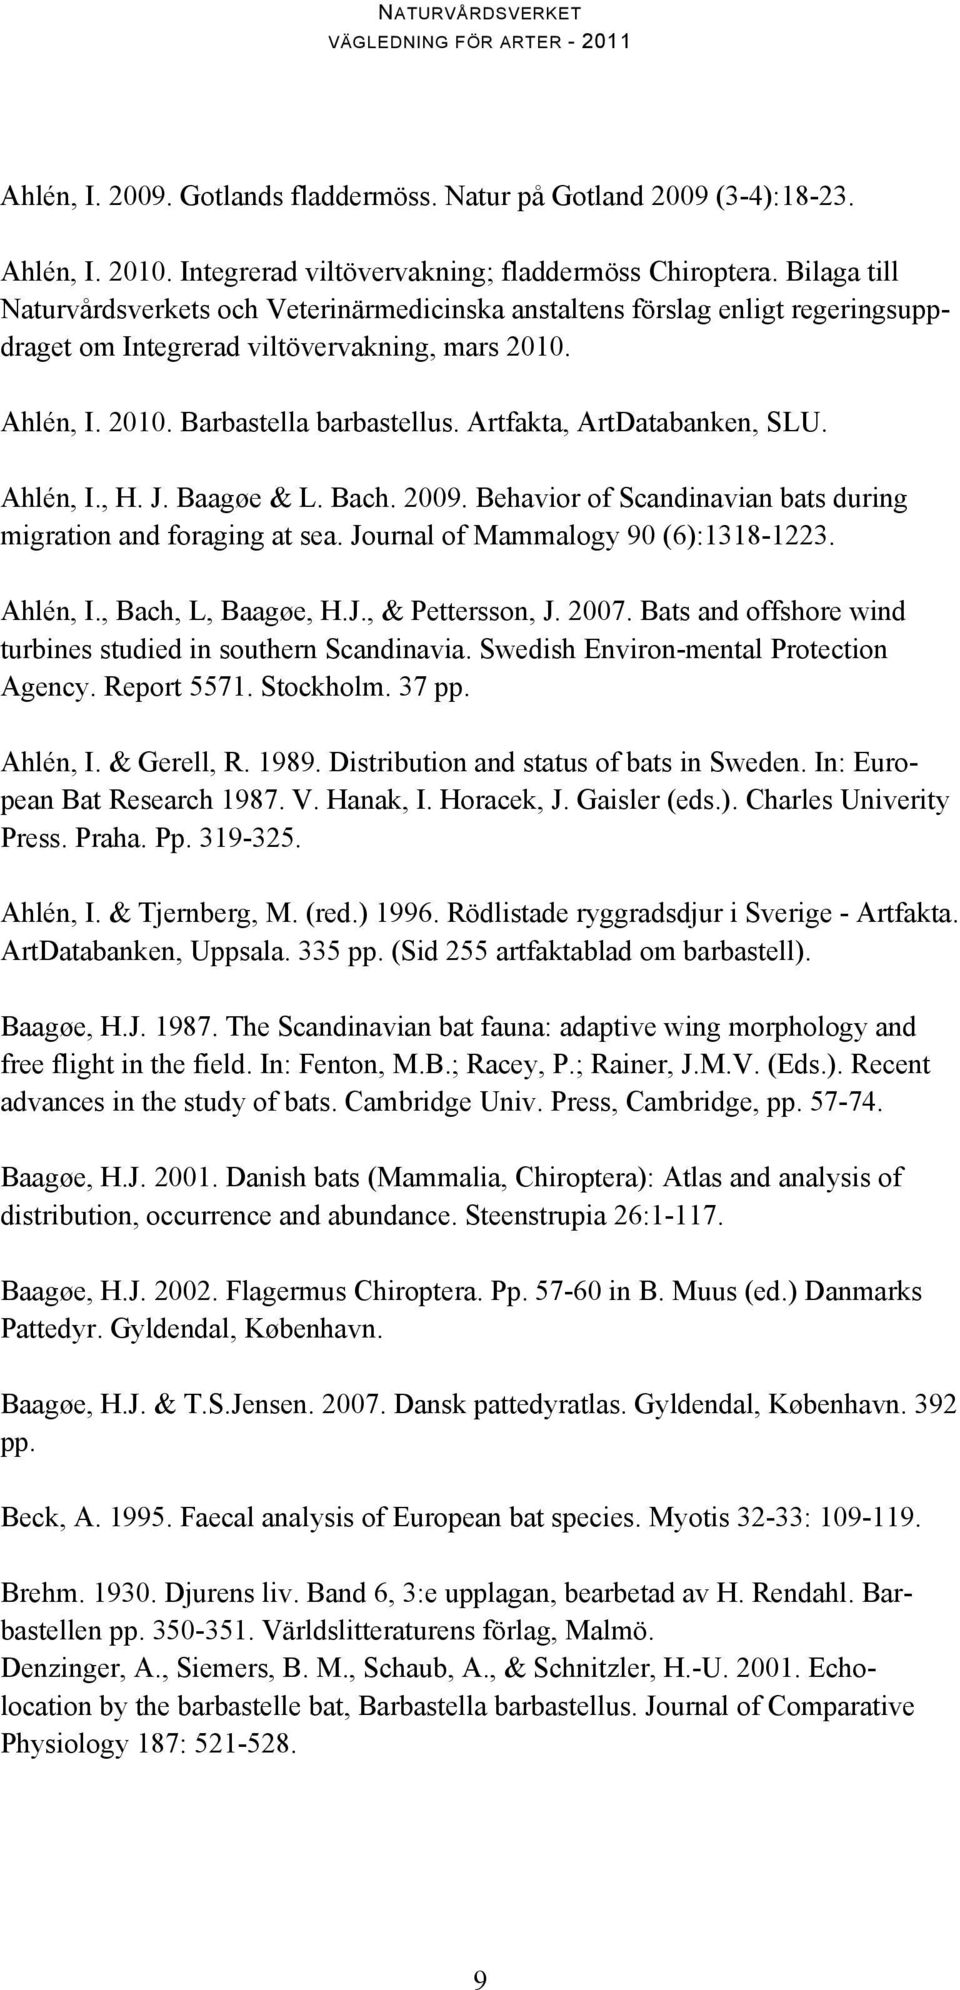 Artfakta, ArtDatabanken, SLU. Ahlén, I., H. J. Baagøe & L. Bach. 2009. Behavior of Scandinavian bats during migration and foraging at sea. Journal of Mammalogy 90 (6):1318-1223. Ahlén, I., Bach, L, Baagøe, H.